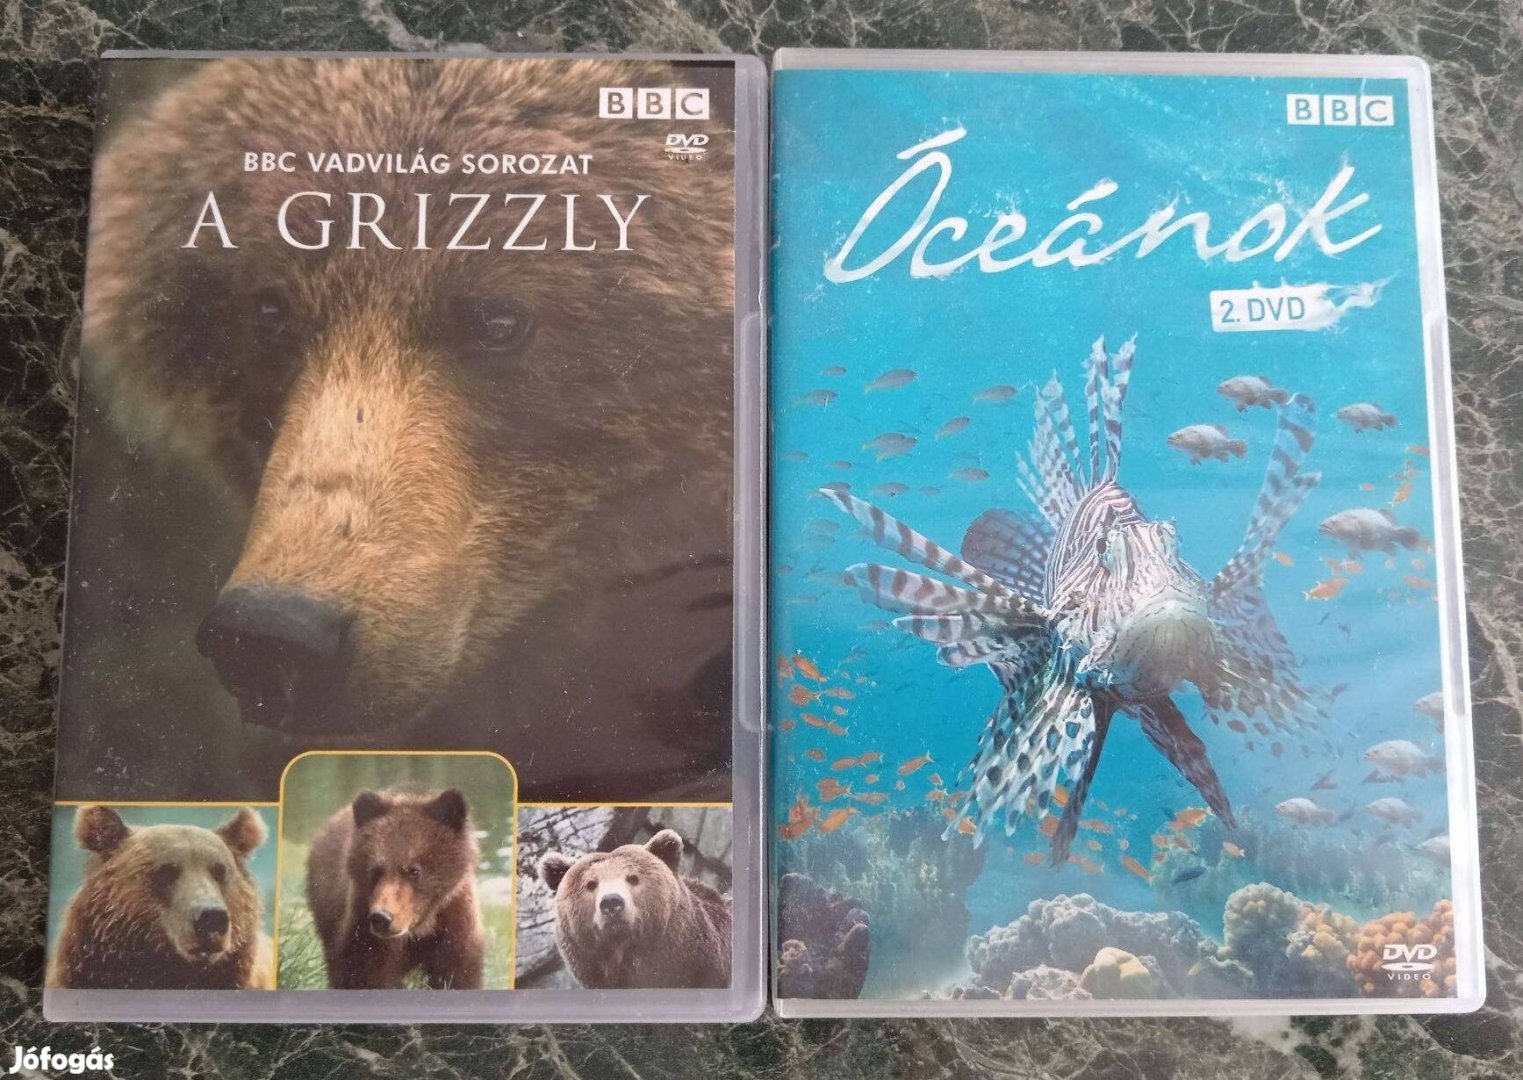 DVD BBC Vadvilág sorozat A Grizzly, Óceánok